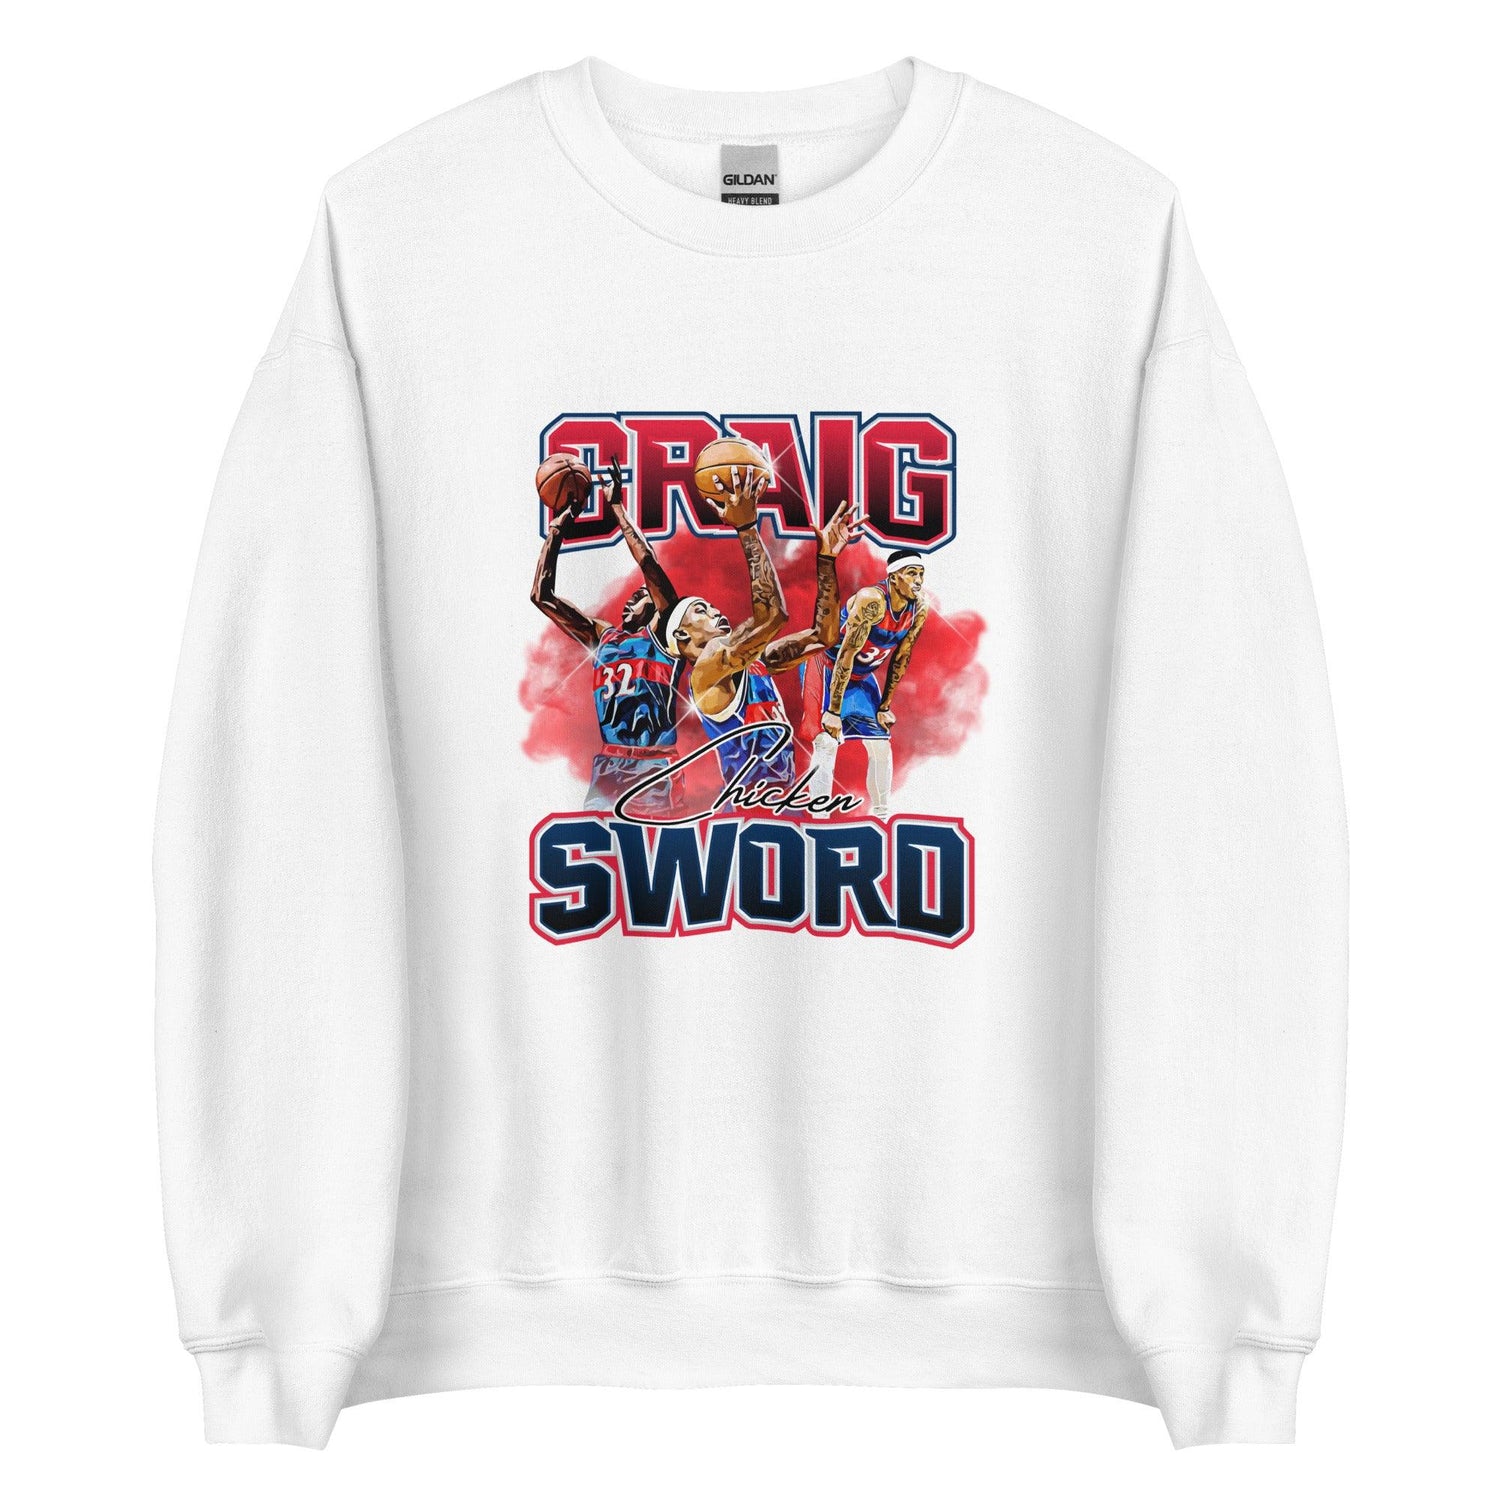 Craig Sword "Limited Edition" Sweatshirt - Fan Arch